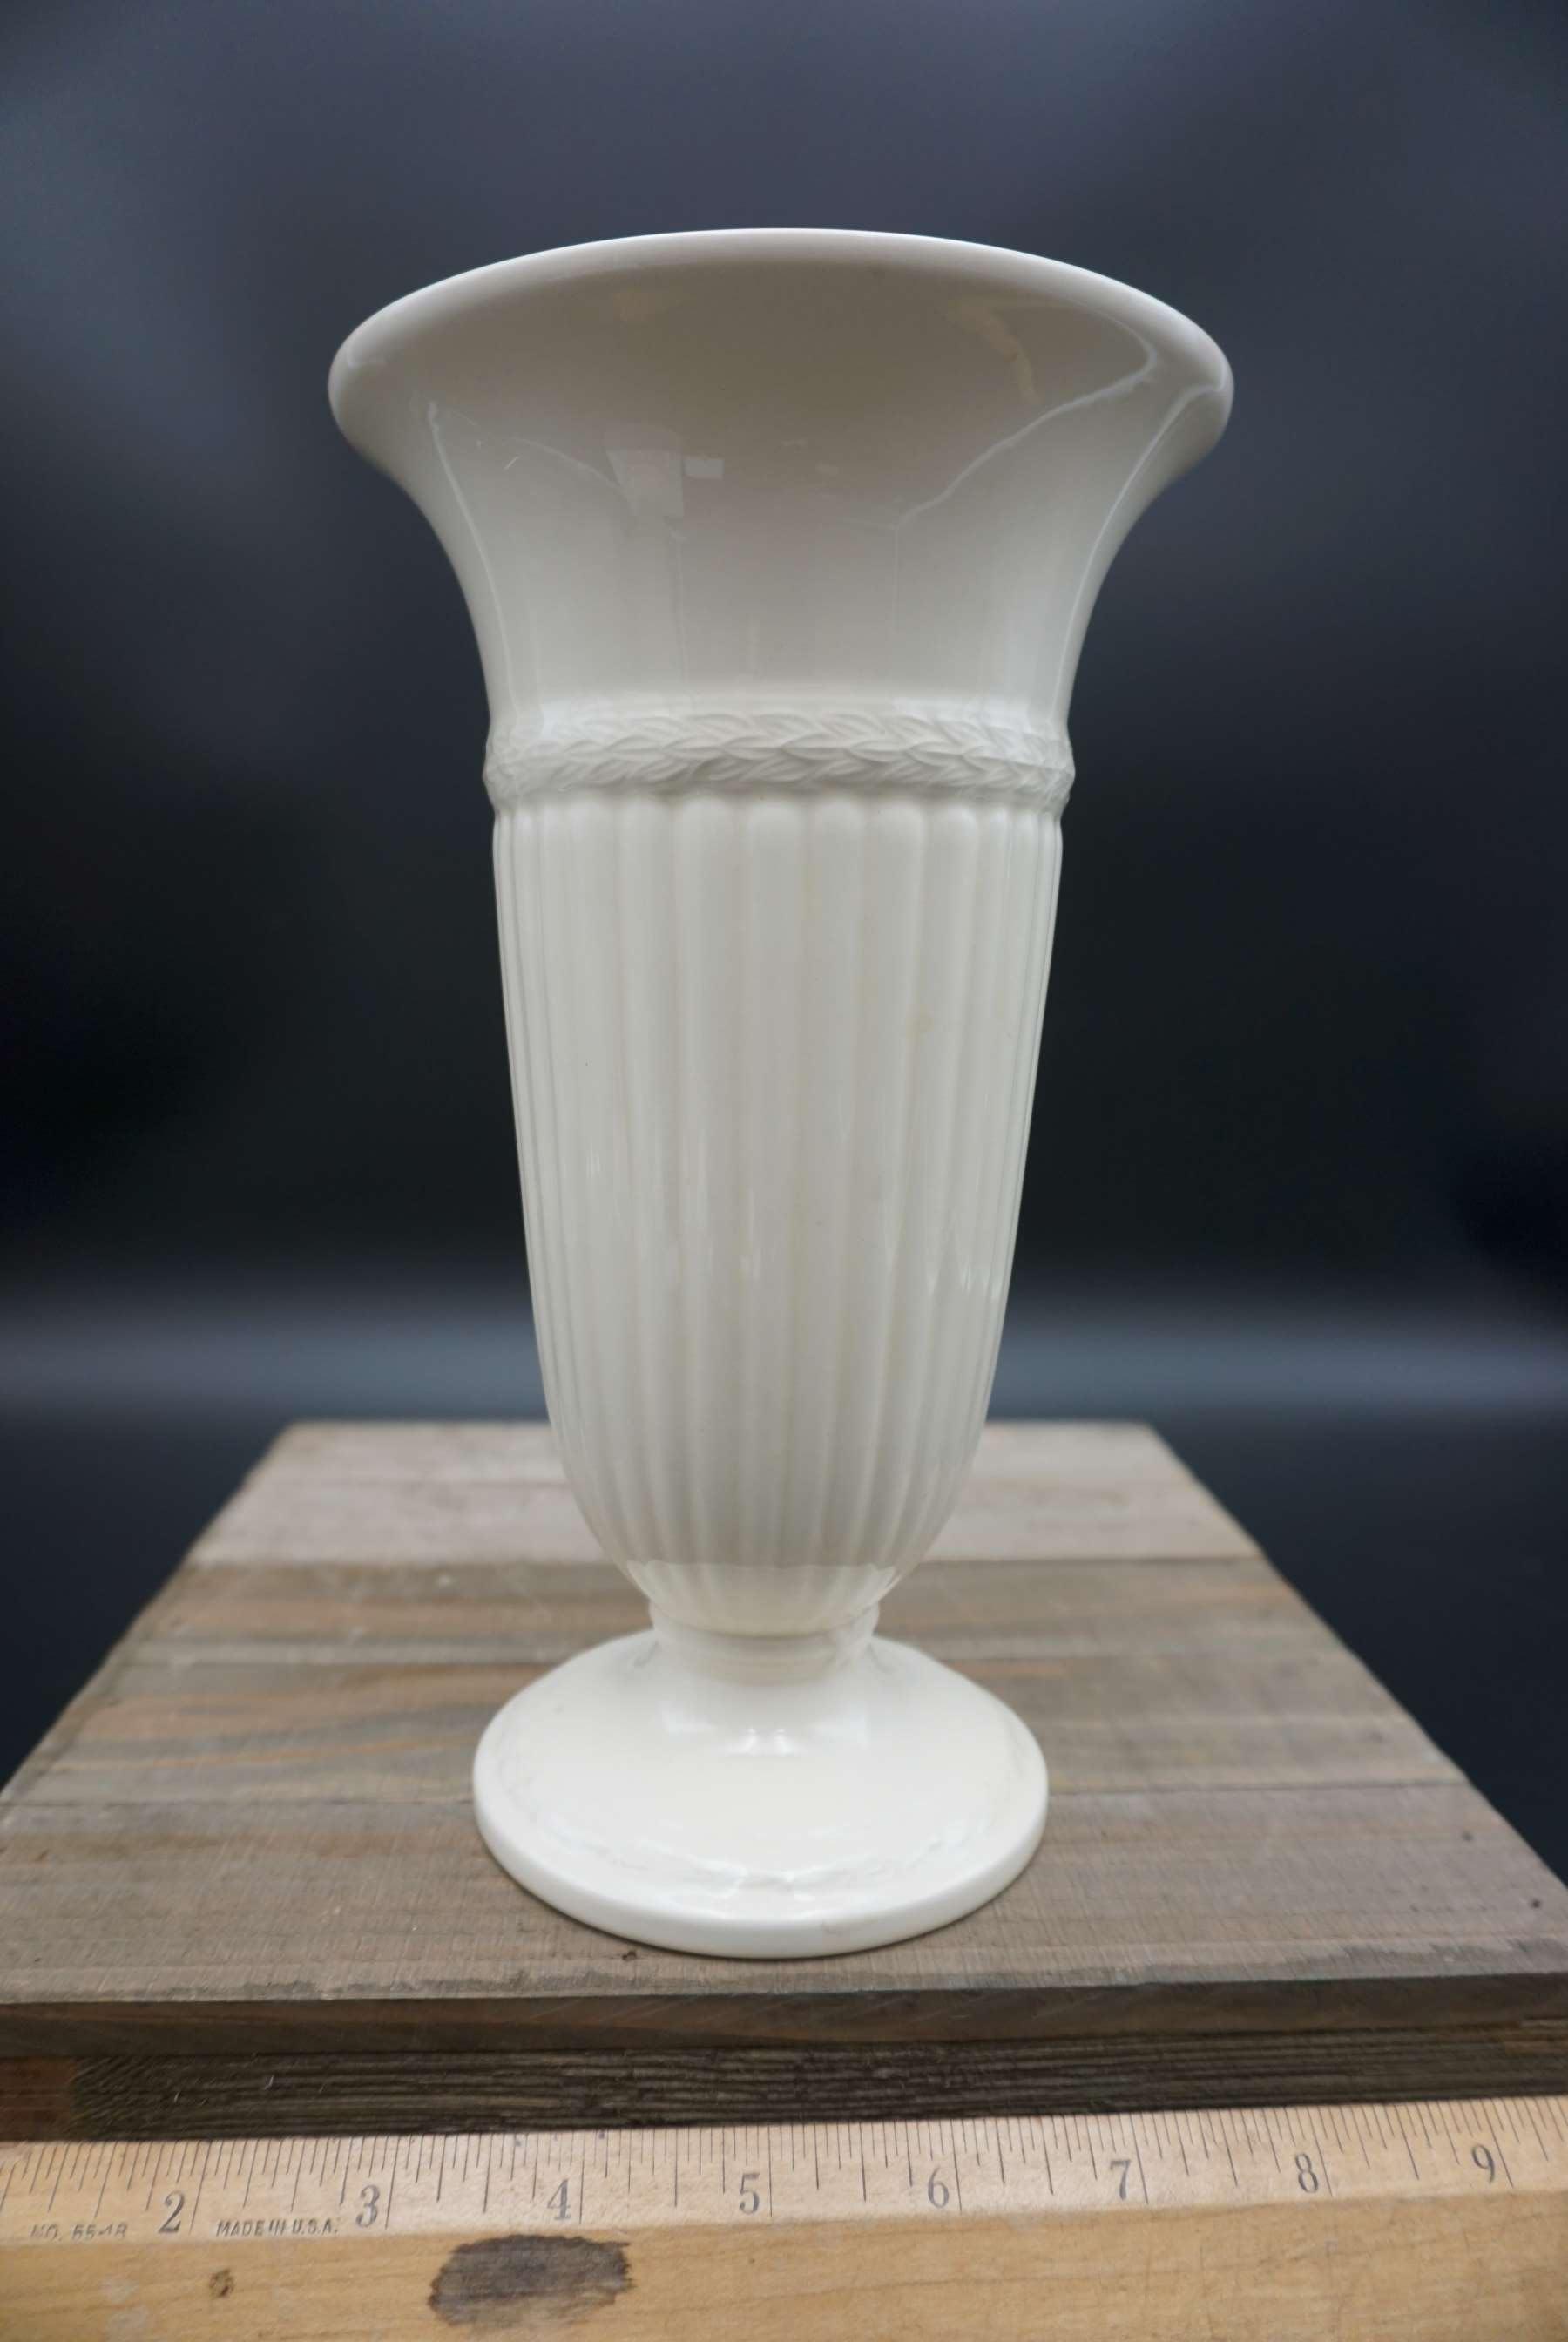 Set of 4 medium Wedgewood China vases, 9 inches